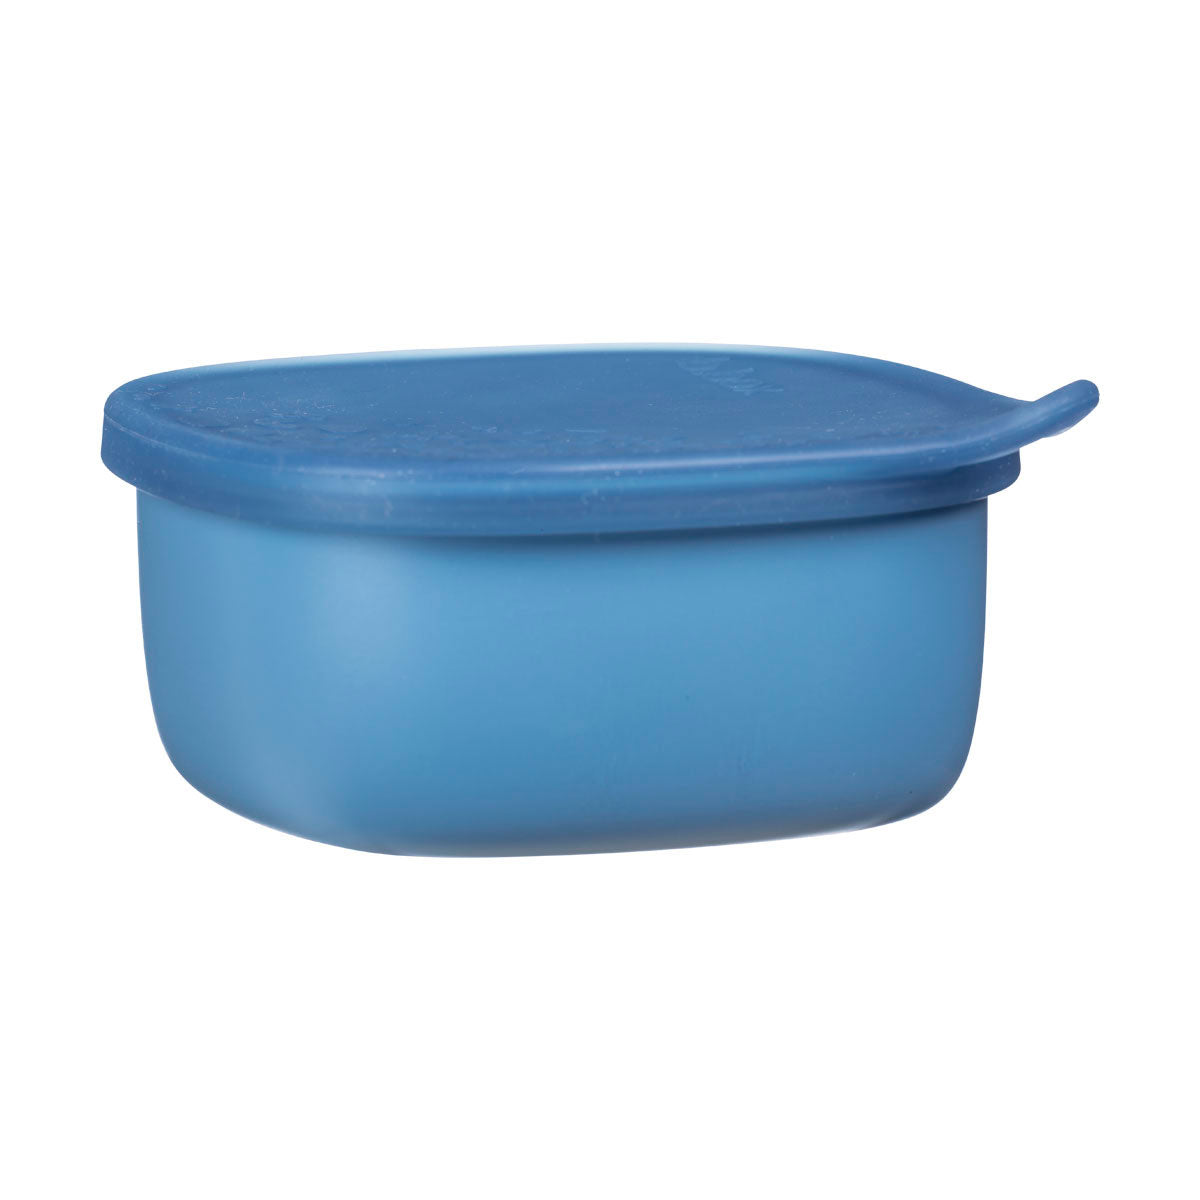 ocean blue lunch tub by bbox